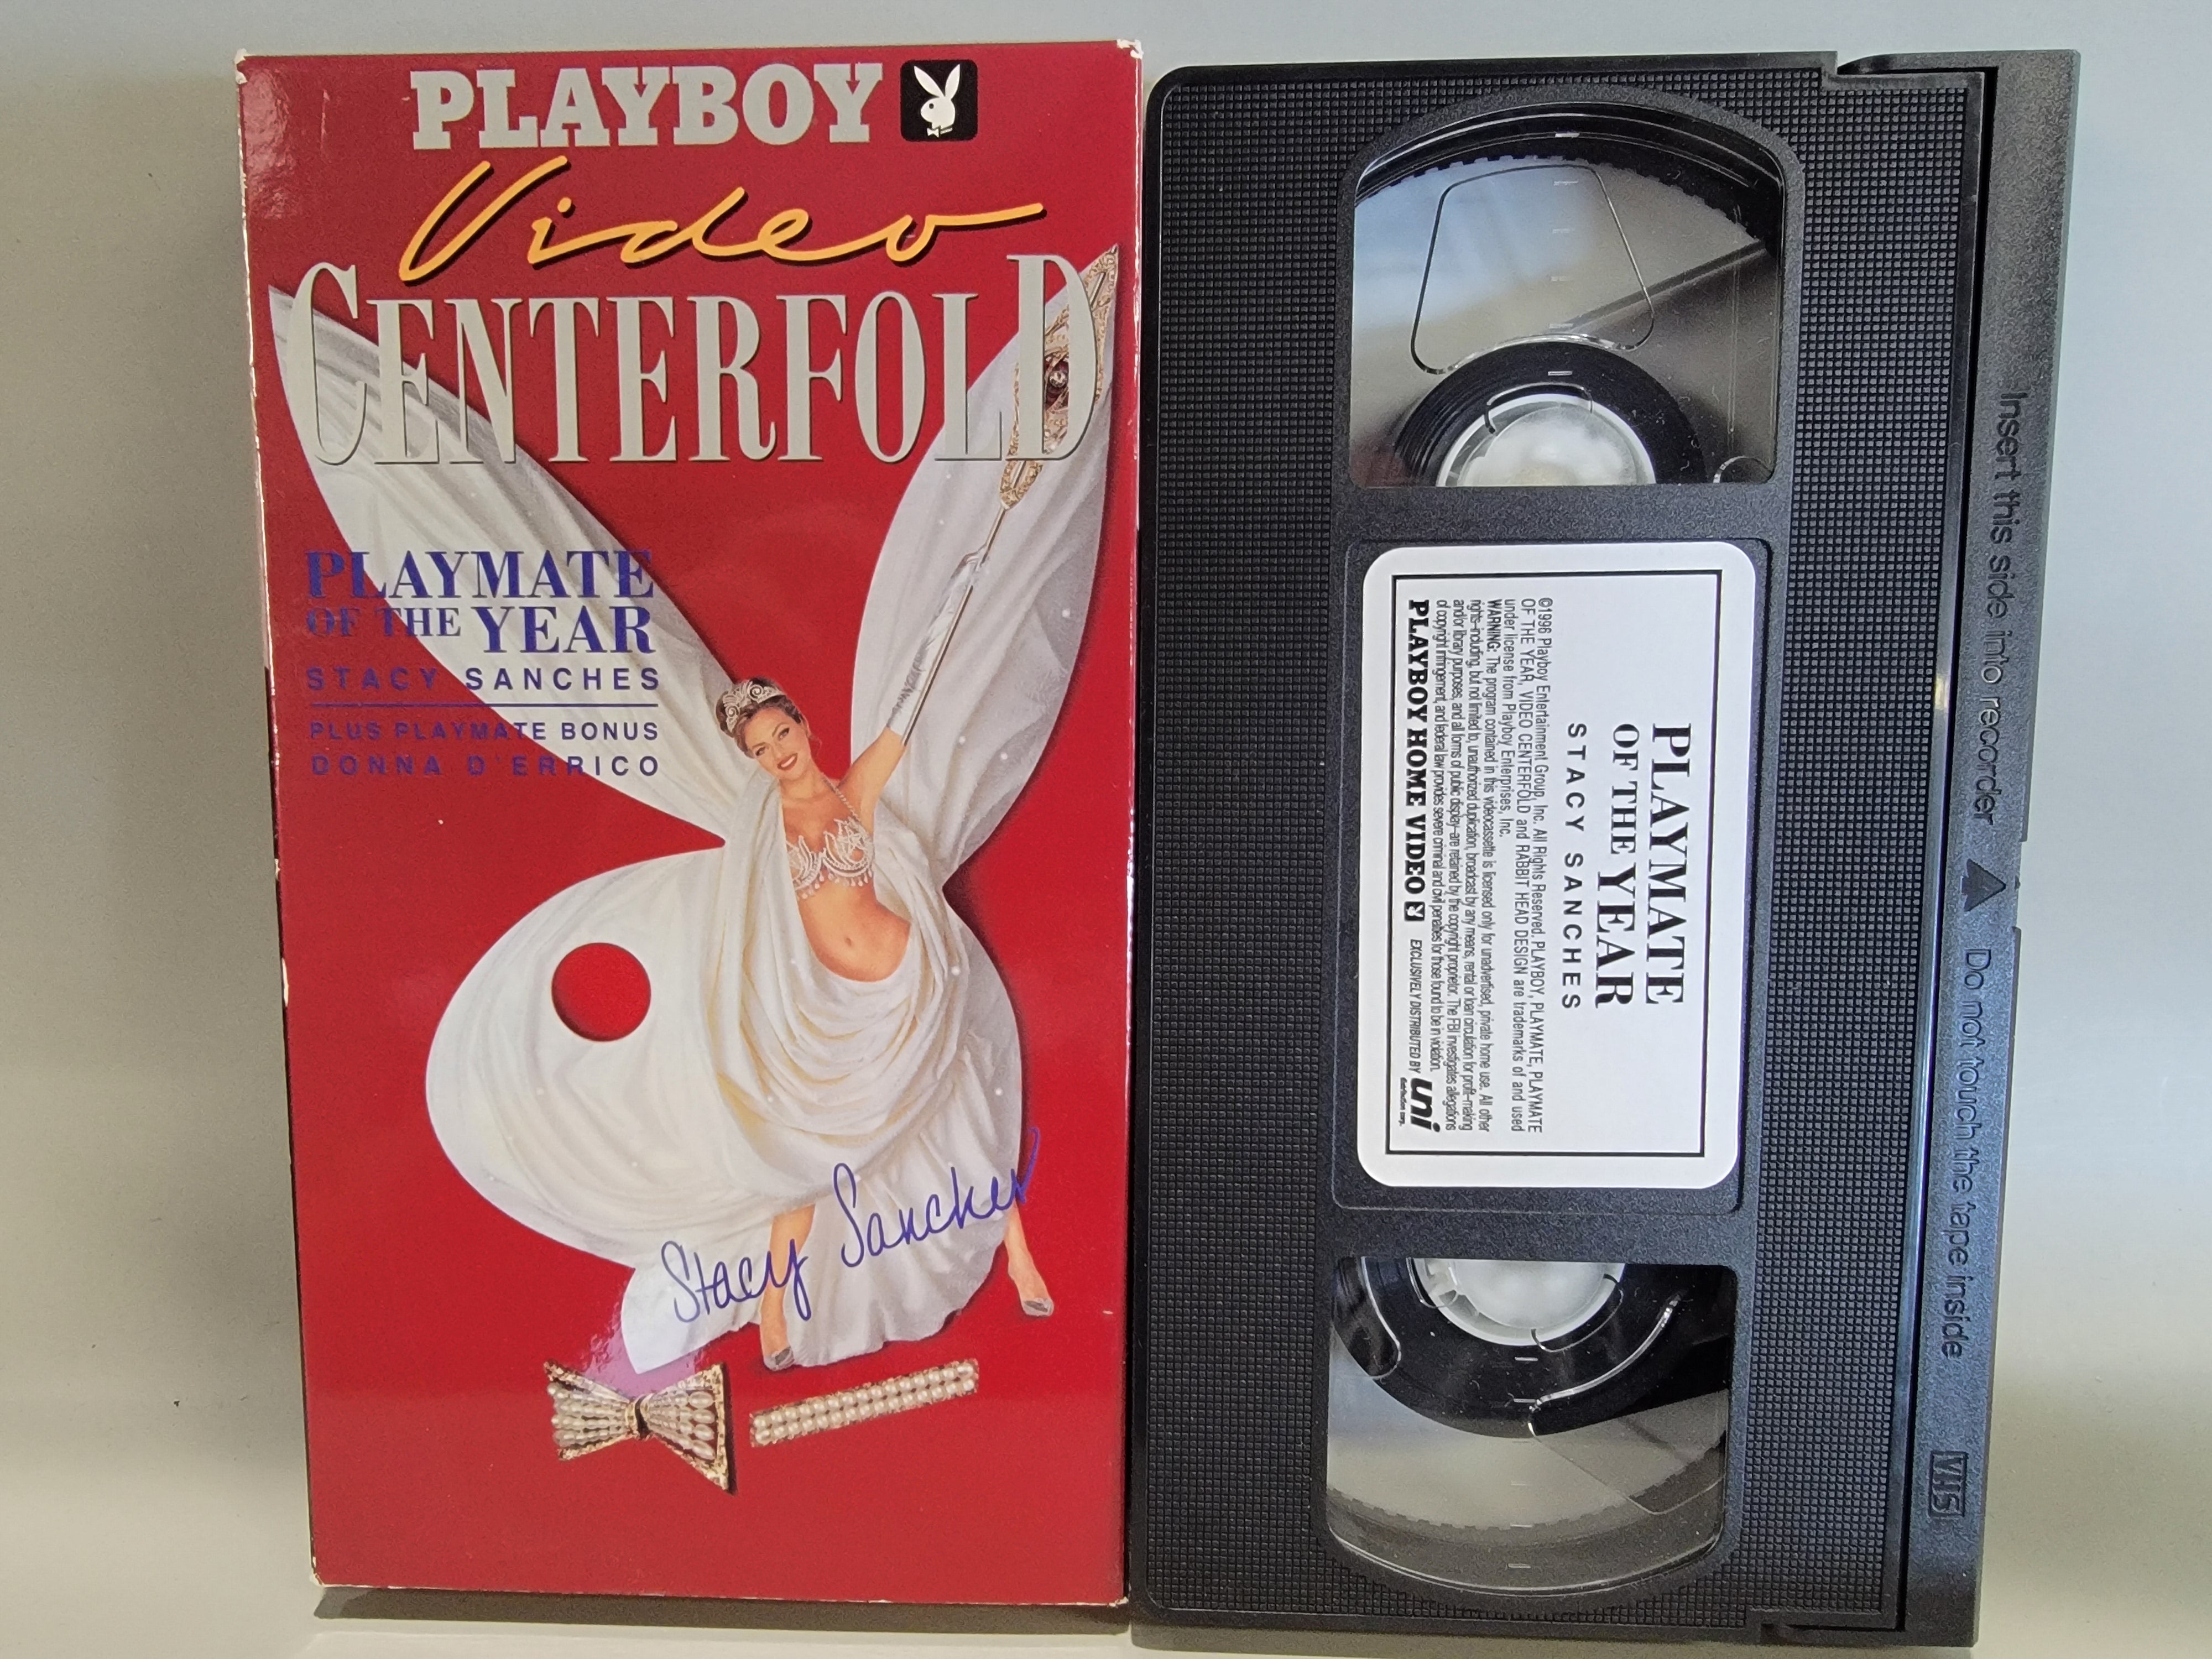 PLAYBOY VIDEO CENTERFOLD: STACY SANCHEZ VHS [USED]